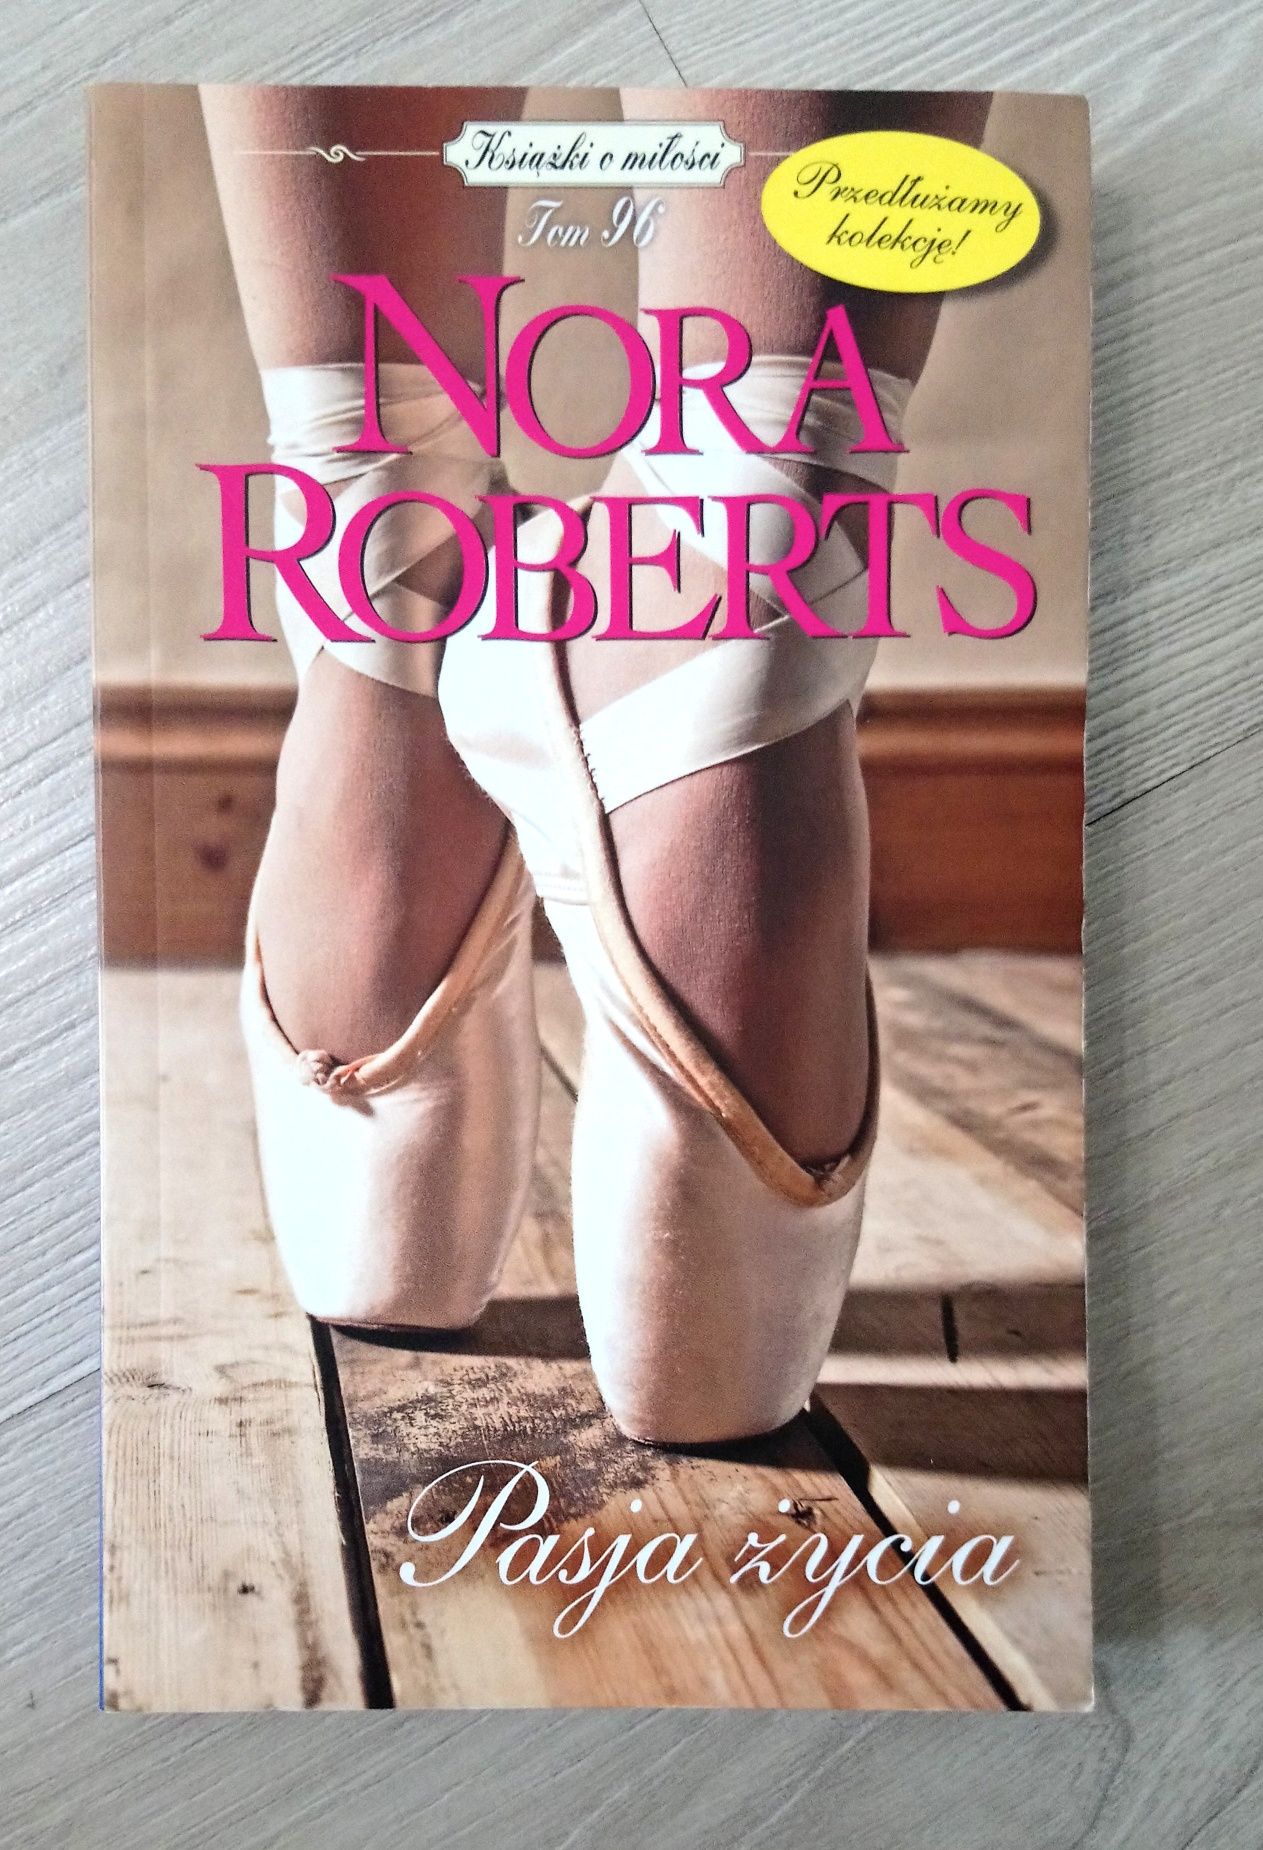 Pasja życia. Nora Roberts. Tom 96